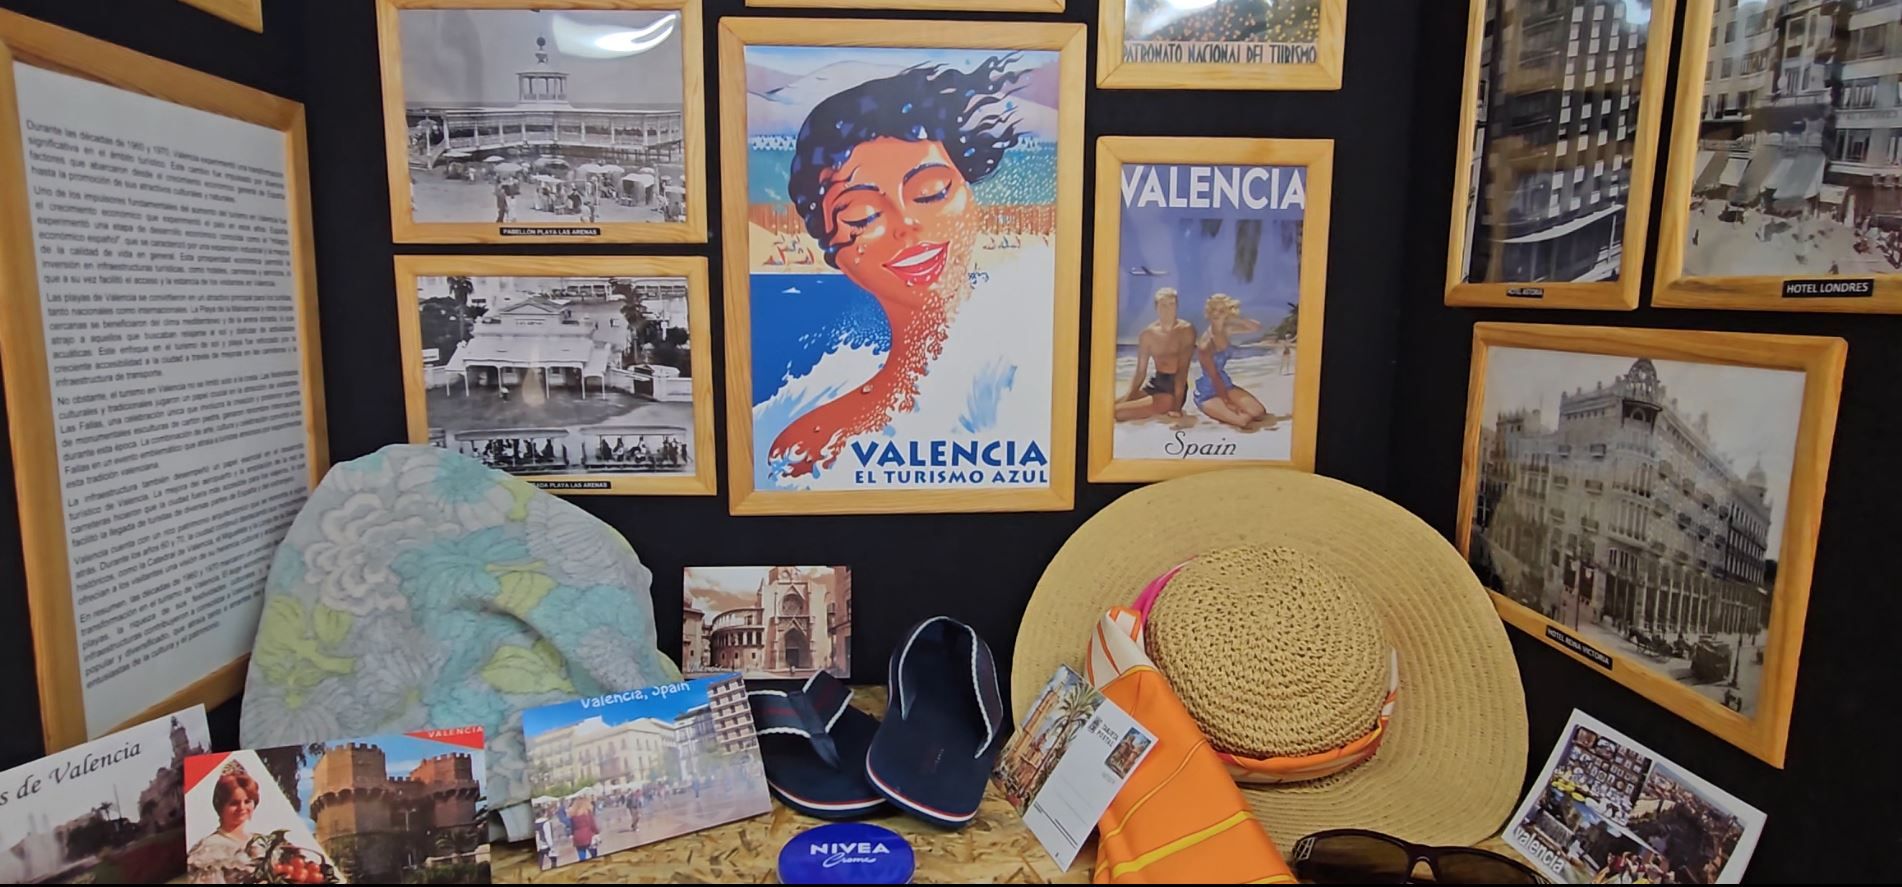 El viaje a la València del pasado que ofrece la falla Borrull-Turia